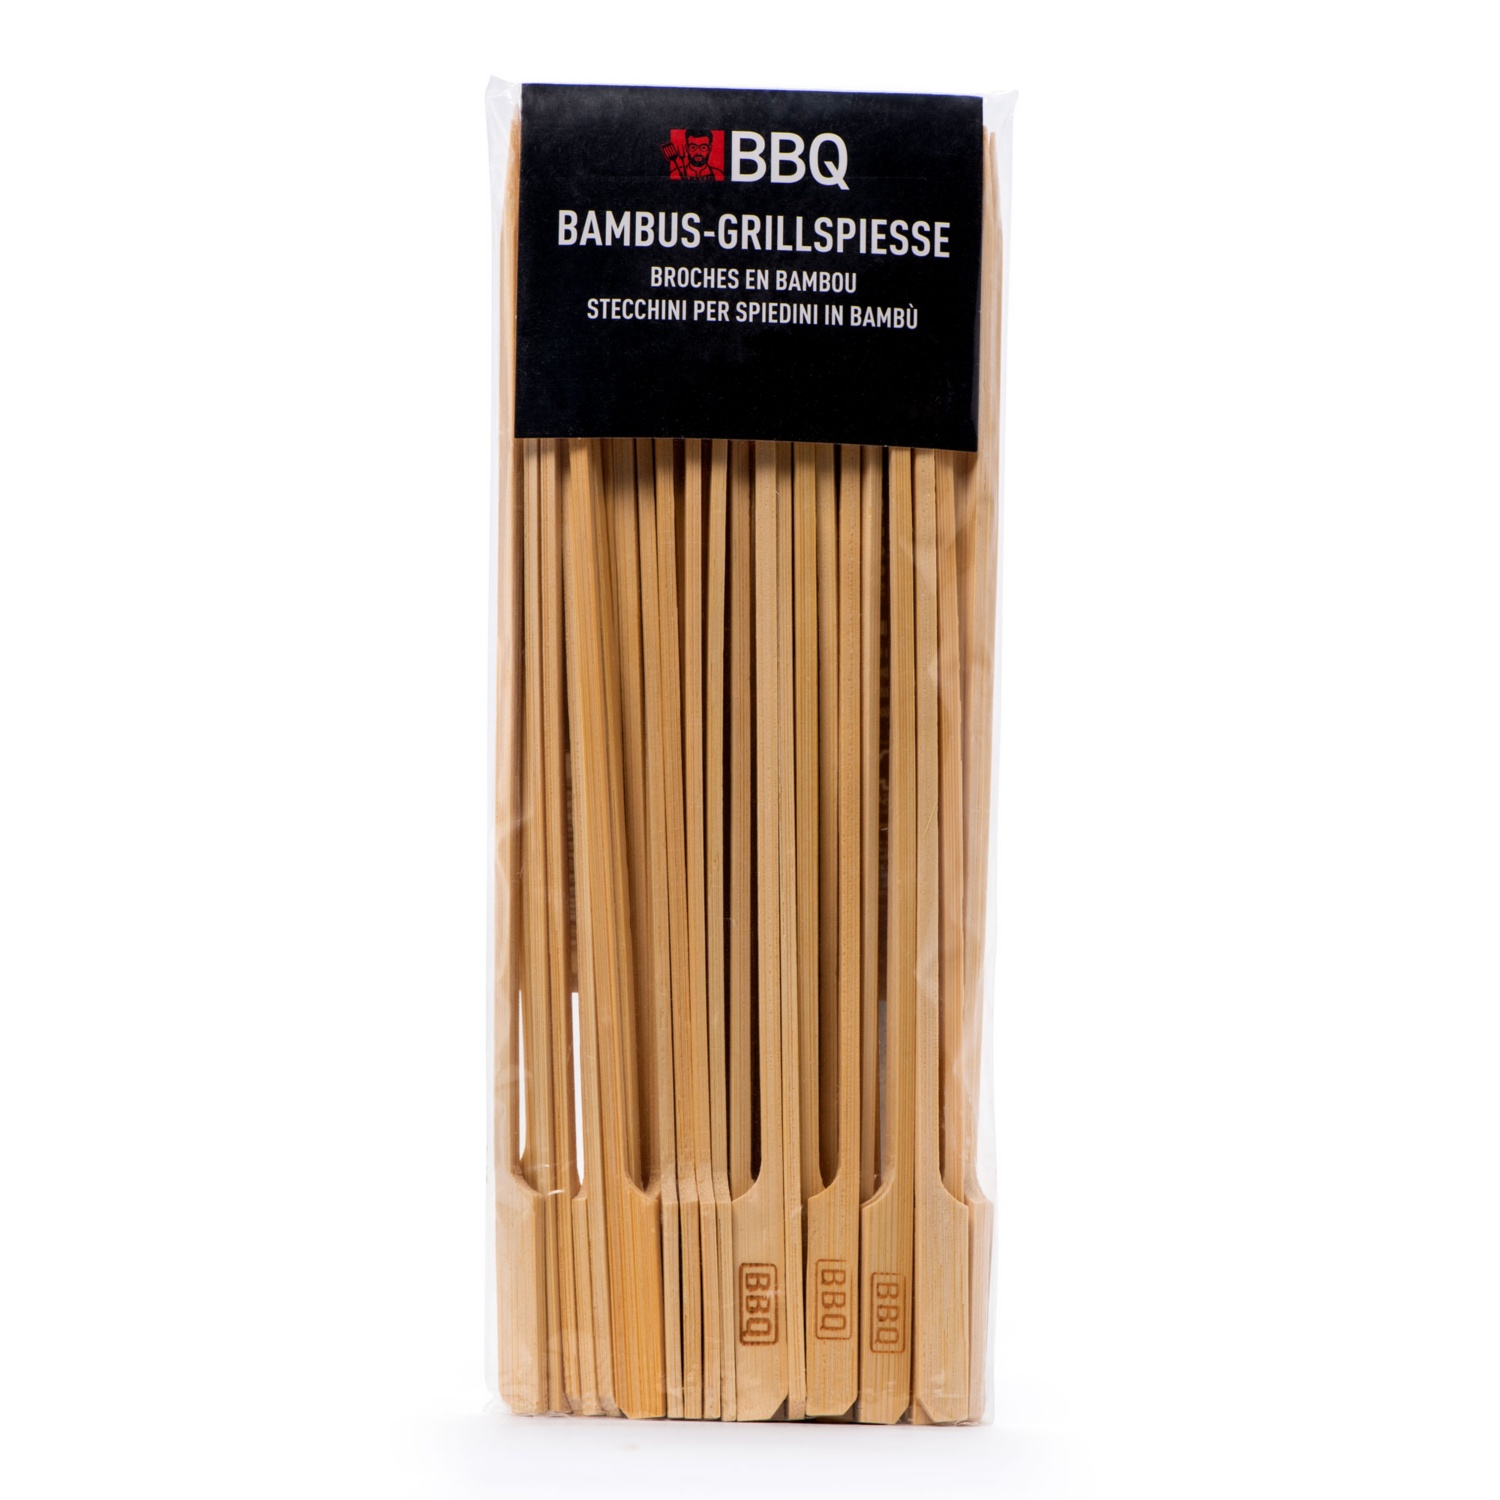 BBQ Bambus-Grillspiesse